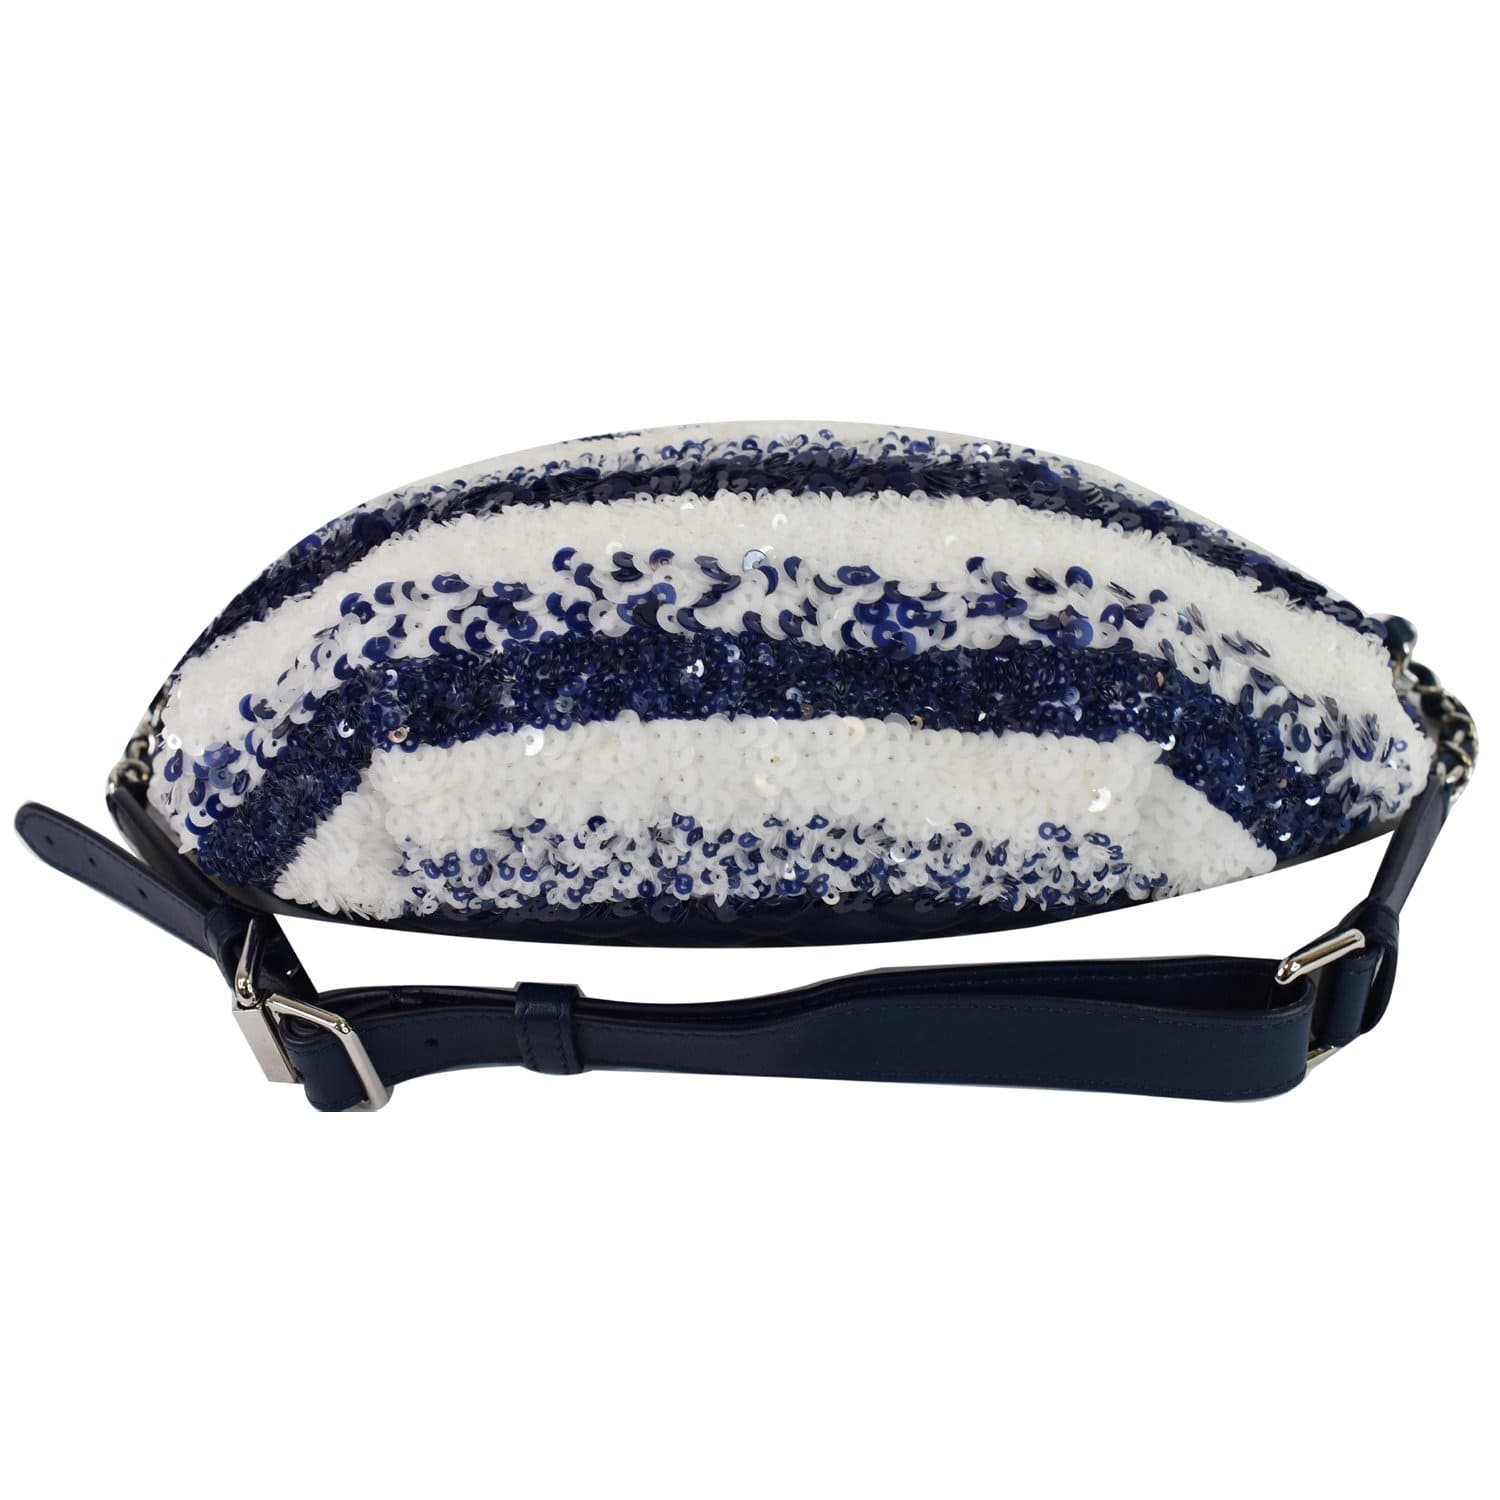 Louis Vuitton Damier Paillettes Waist Bags & Fanny Packs for Women